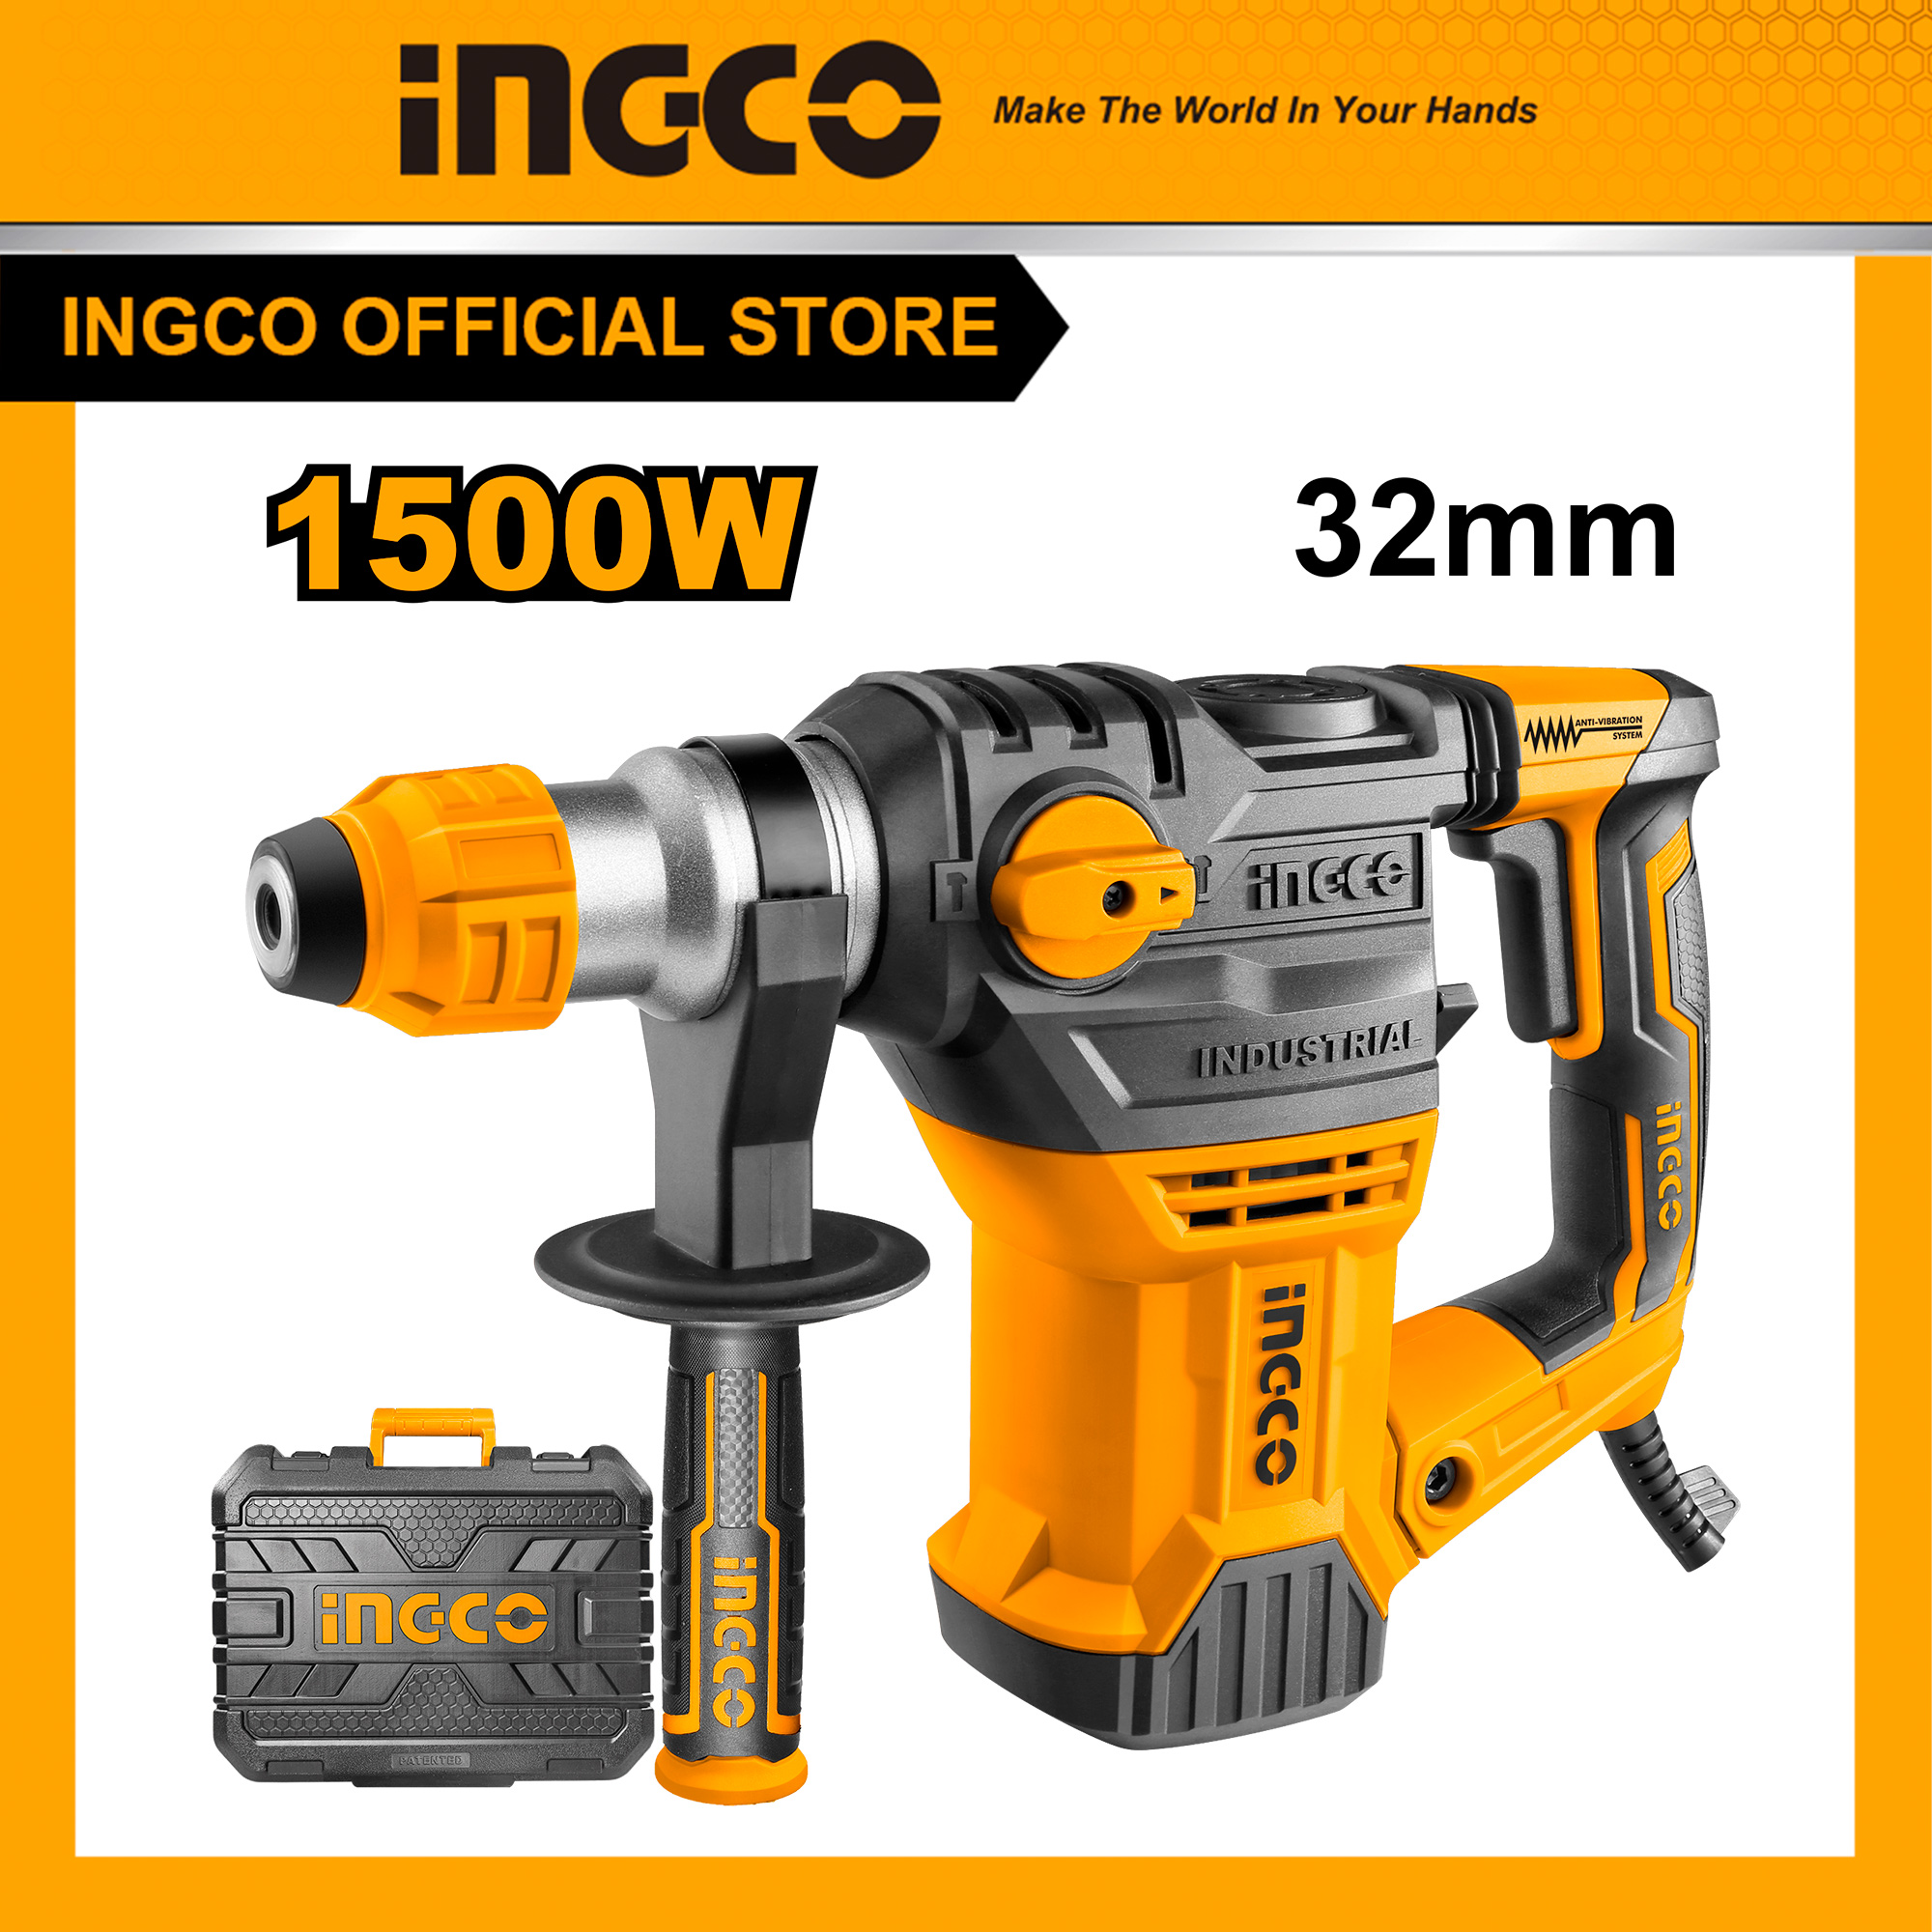 INGCO RH150028 Máy khoan bê tông 650W-1500W Ingco có búa, máy khoan cầm tay 3 chức năng khoan bê tông 32mm, khoan gỗ40mm, thép13mm